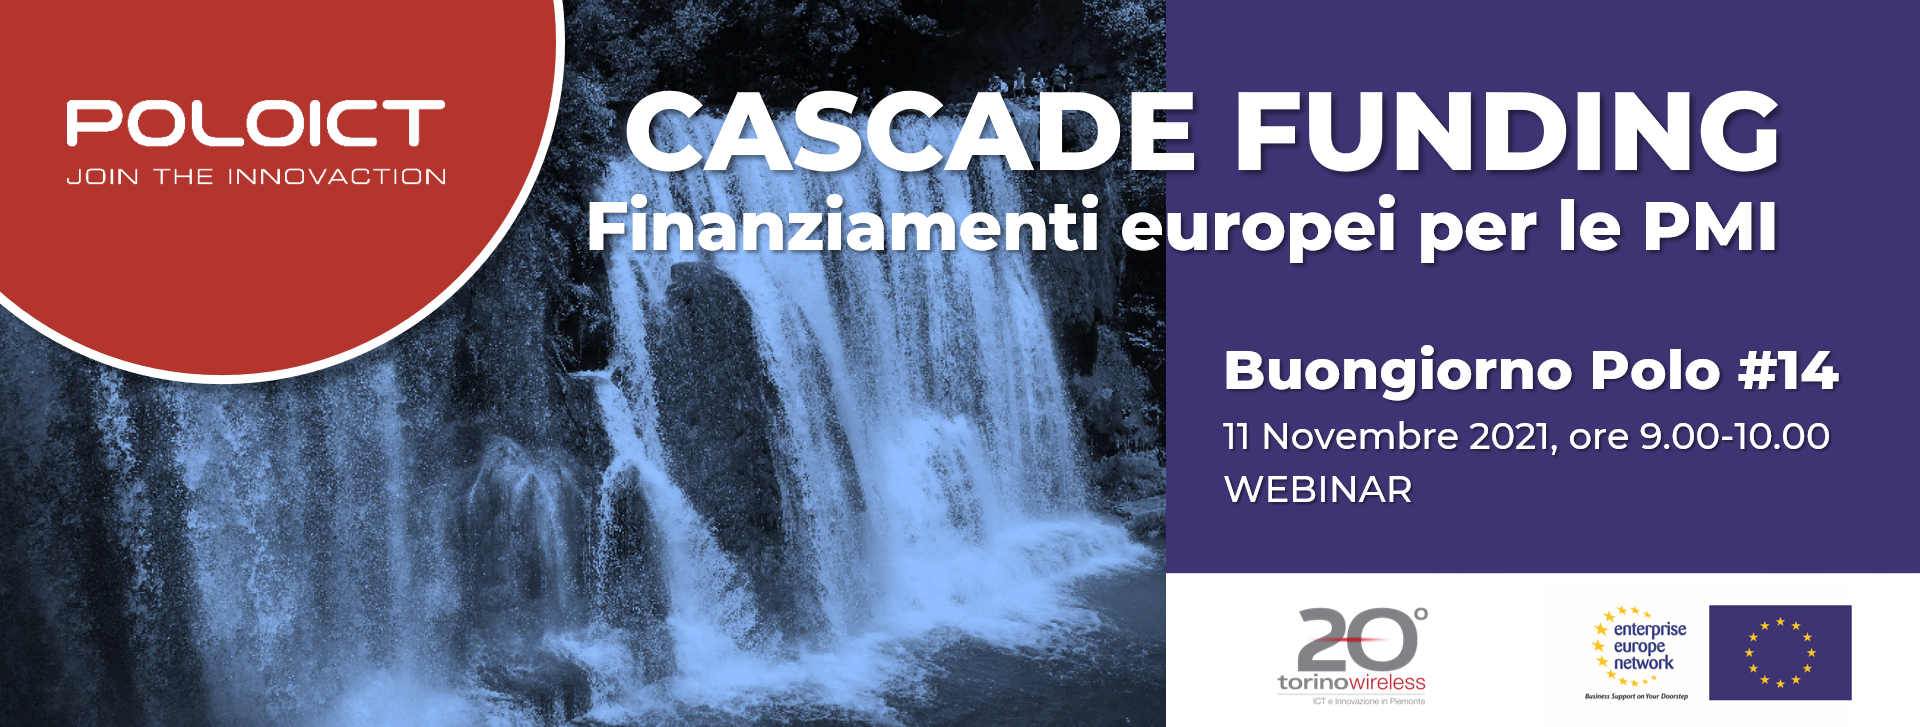 Cascade Funding: finanziamenti europei per le PMI